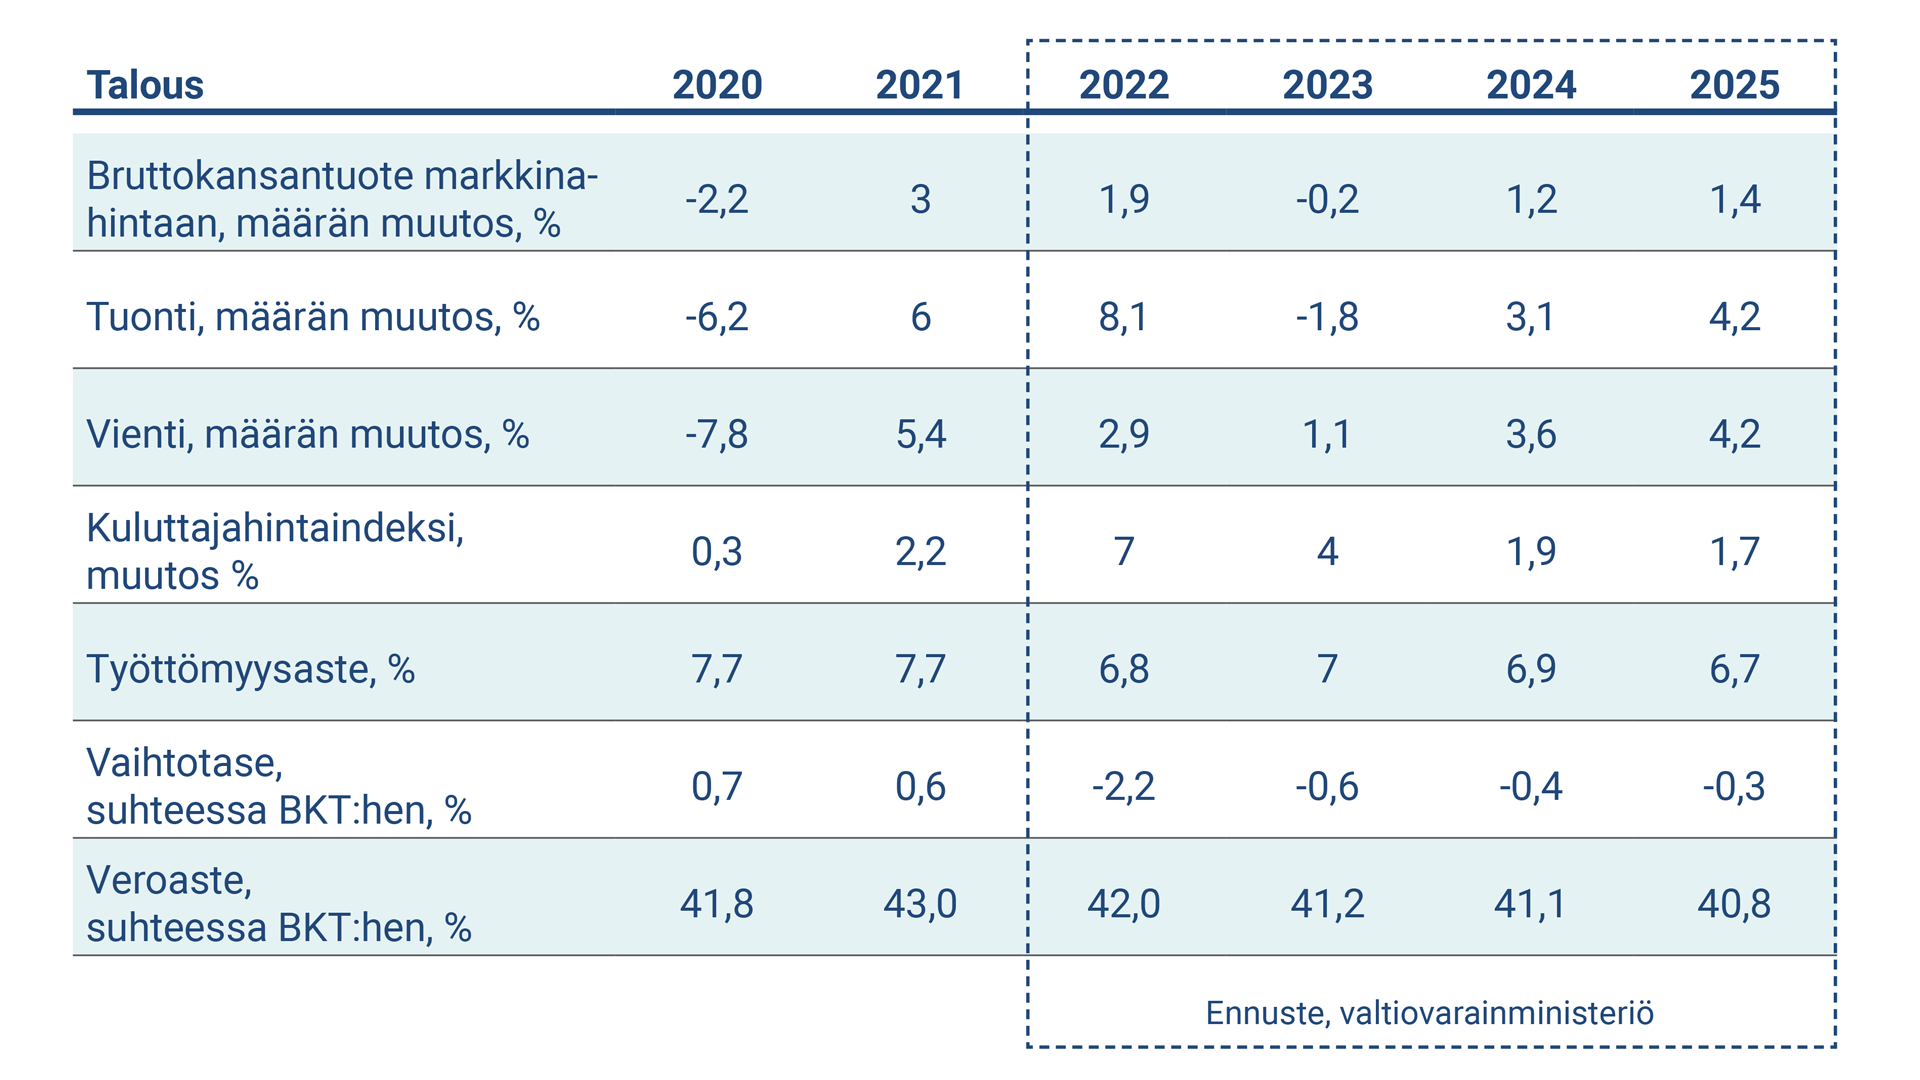 Taulukko kuvaa Suomen talouden keskeisiä tunnuslukuja 2020-2025-